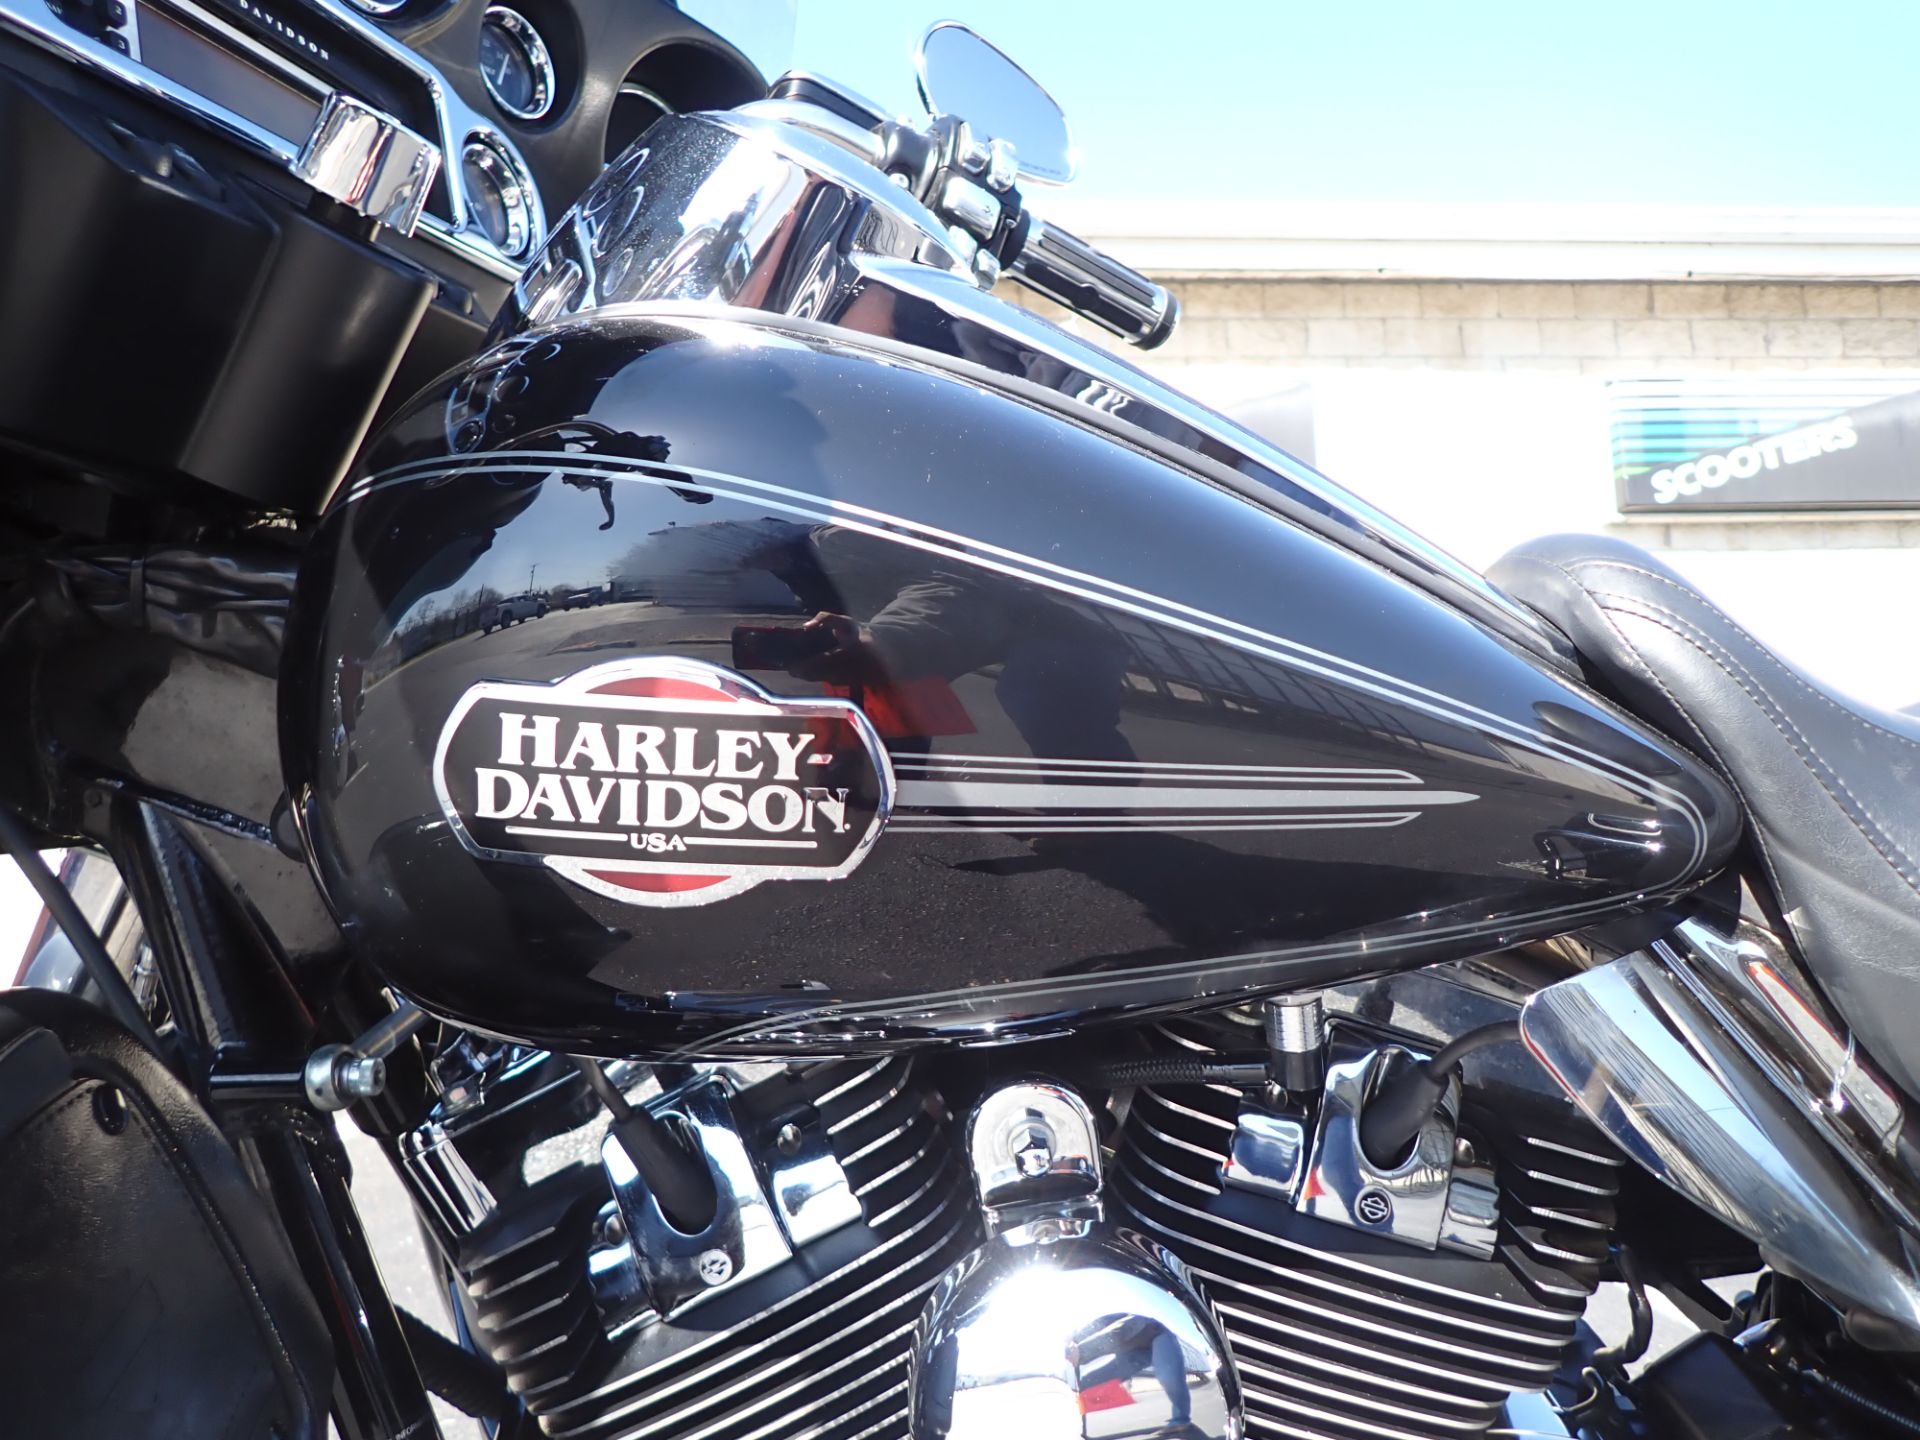 2009 Harley-Davidson Ultra Classic® Electra Glide® in Massillon, Ohio - Photo 9